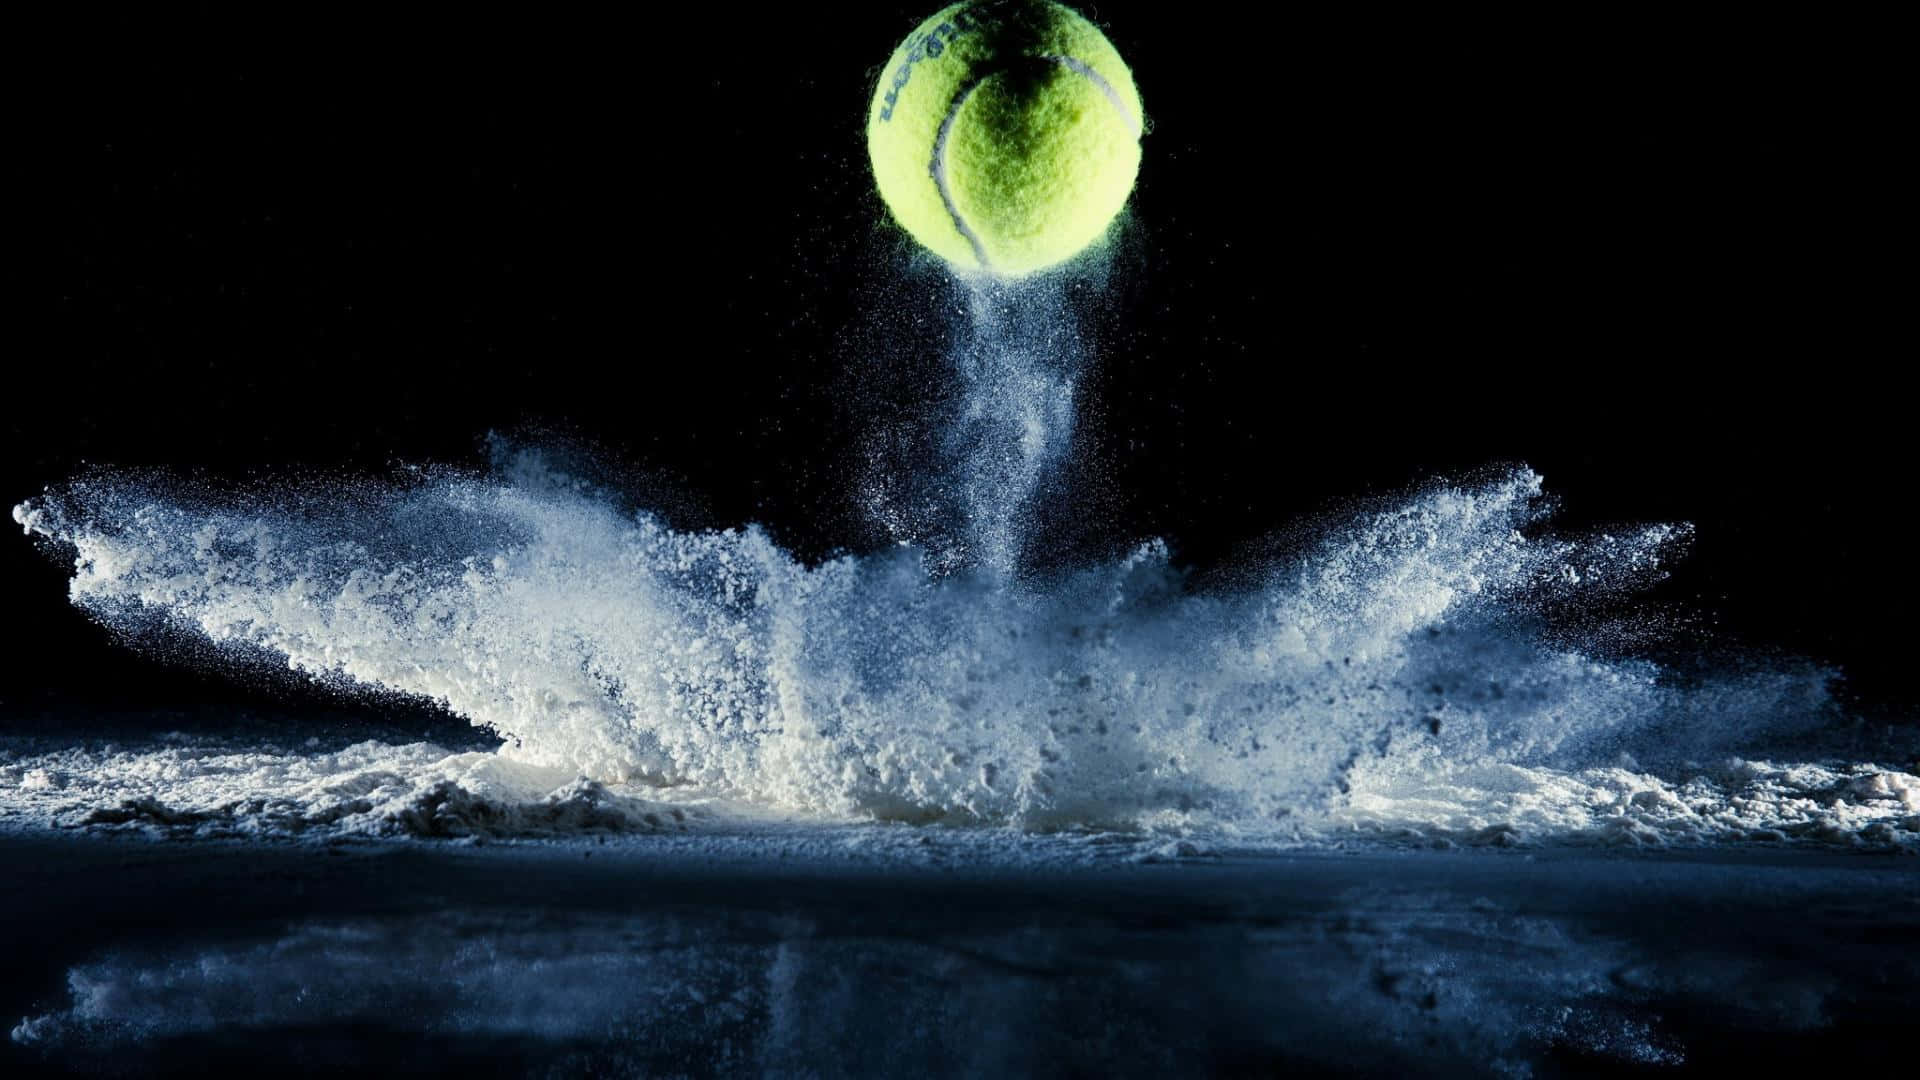 Tennis Background